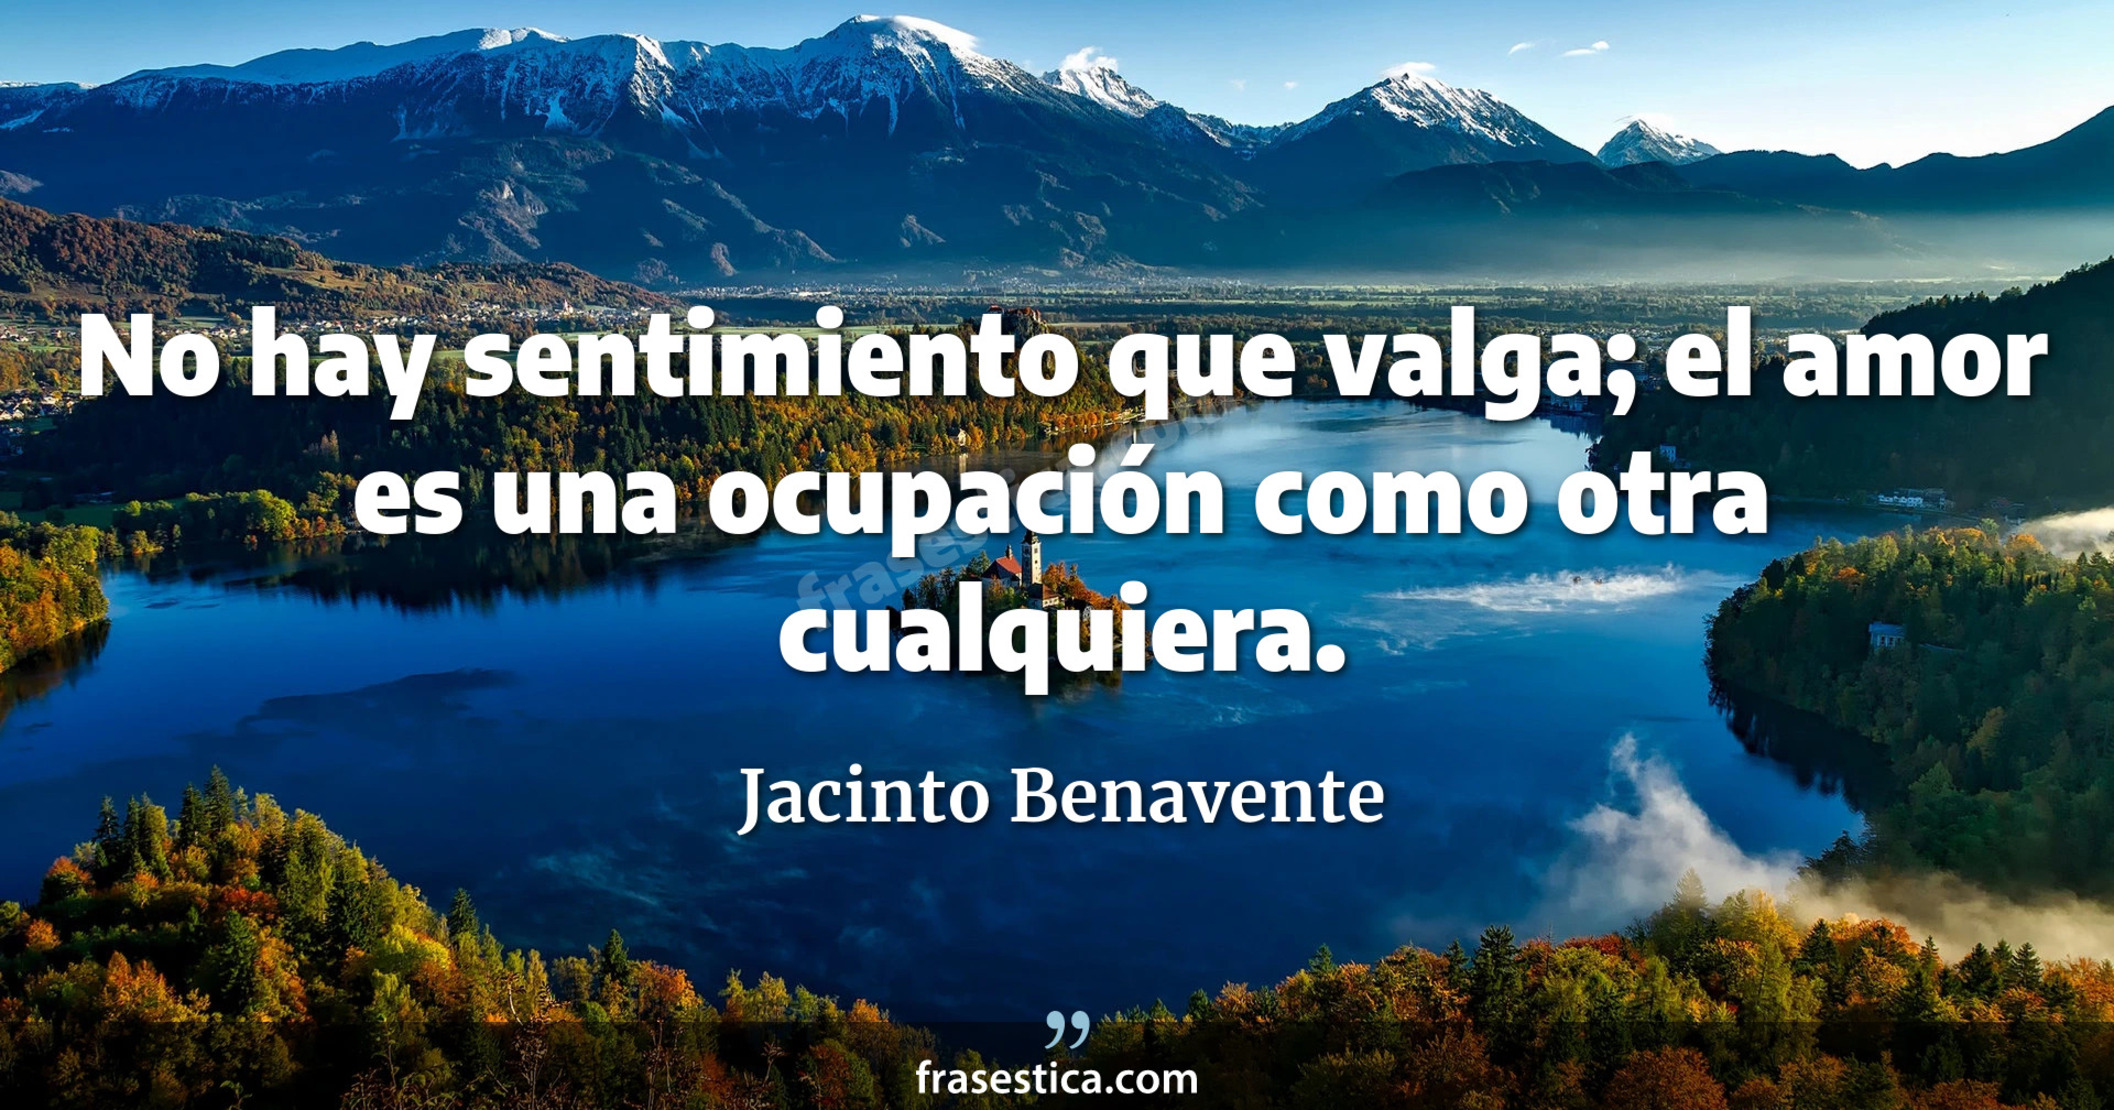 No hay sentimiento que valga; el amor es una ocupación como otra cualquiera. - Jacinto Benavente